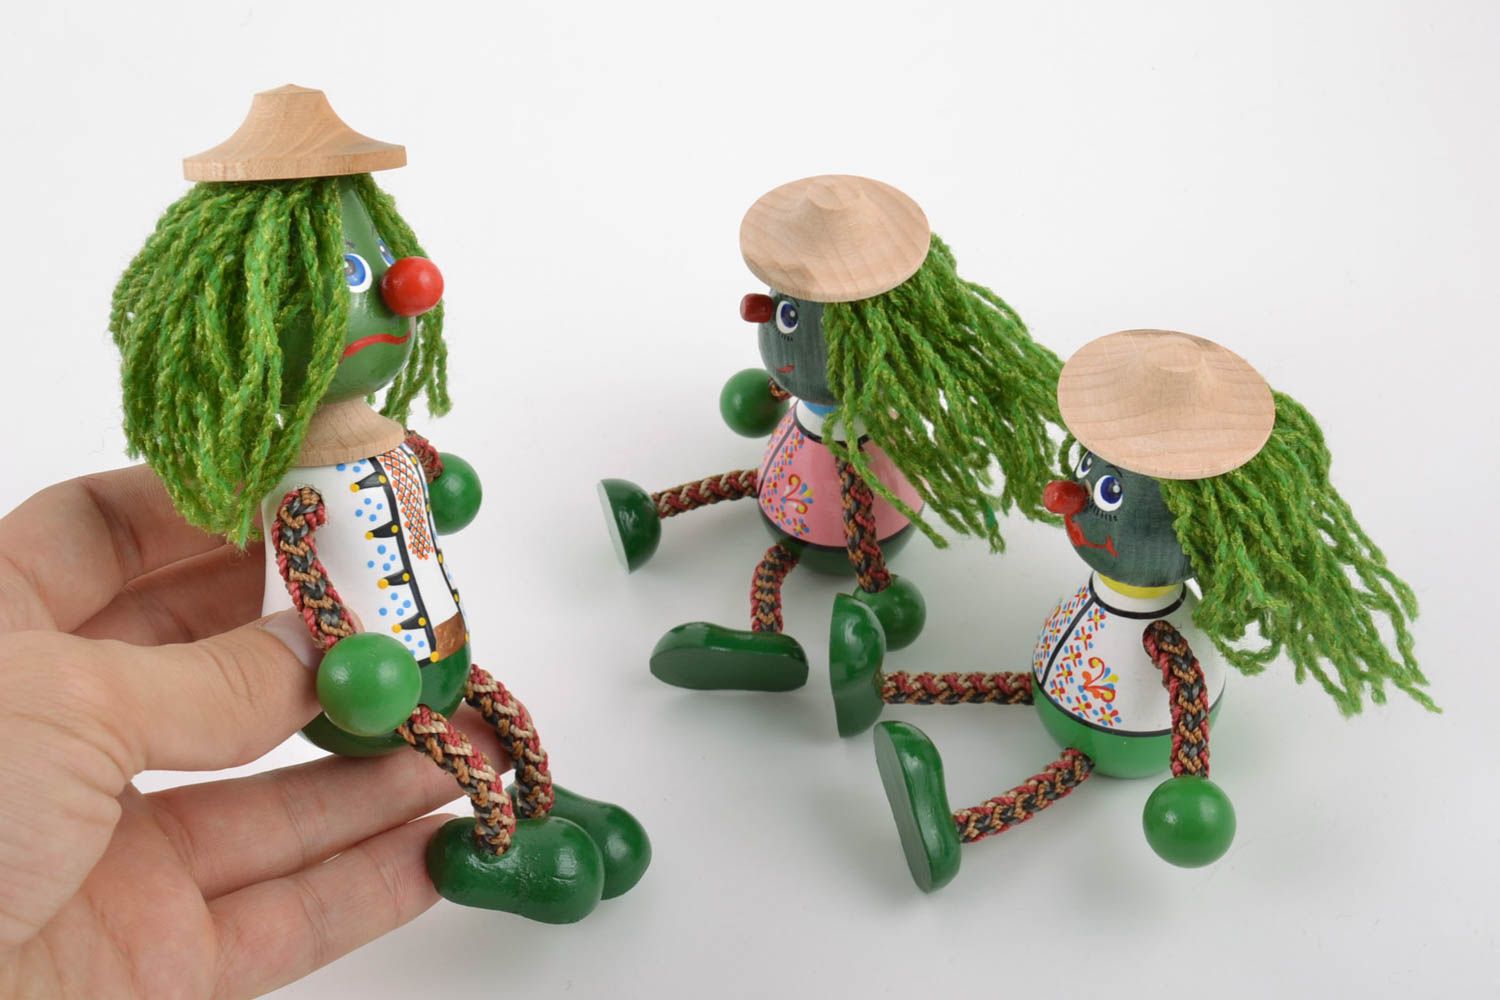 Игрушки из дерева водяные три штуки расписанные красками маленькие ручной работы фото 2